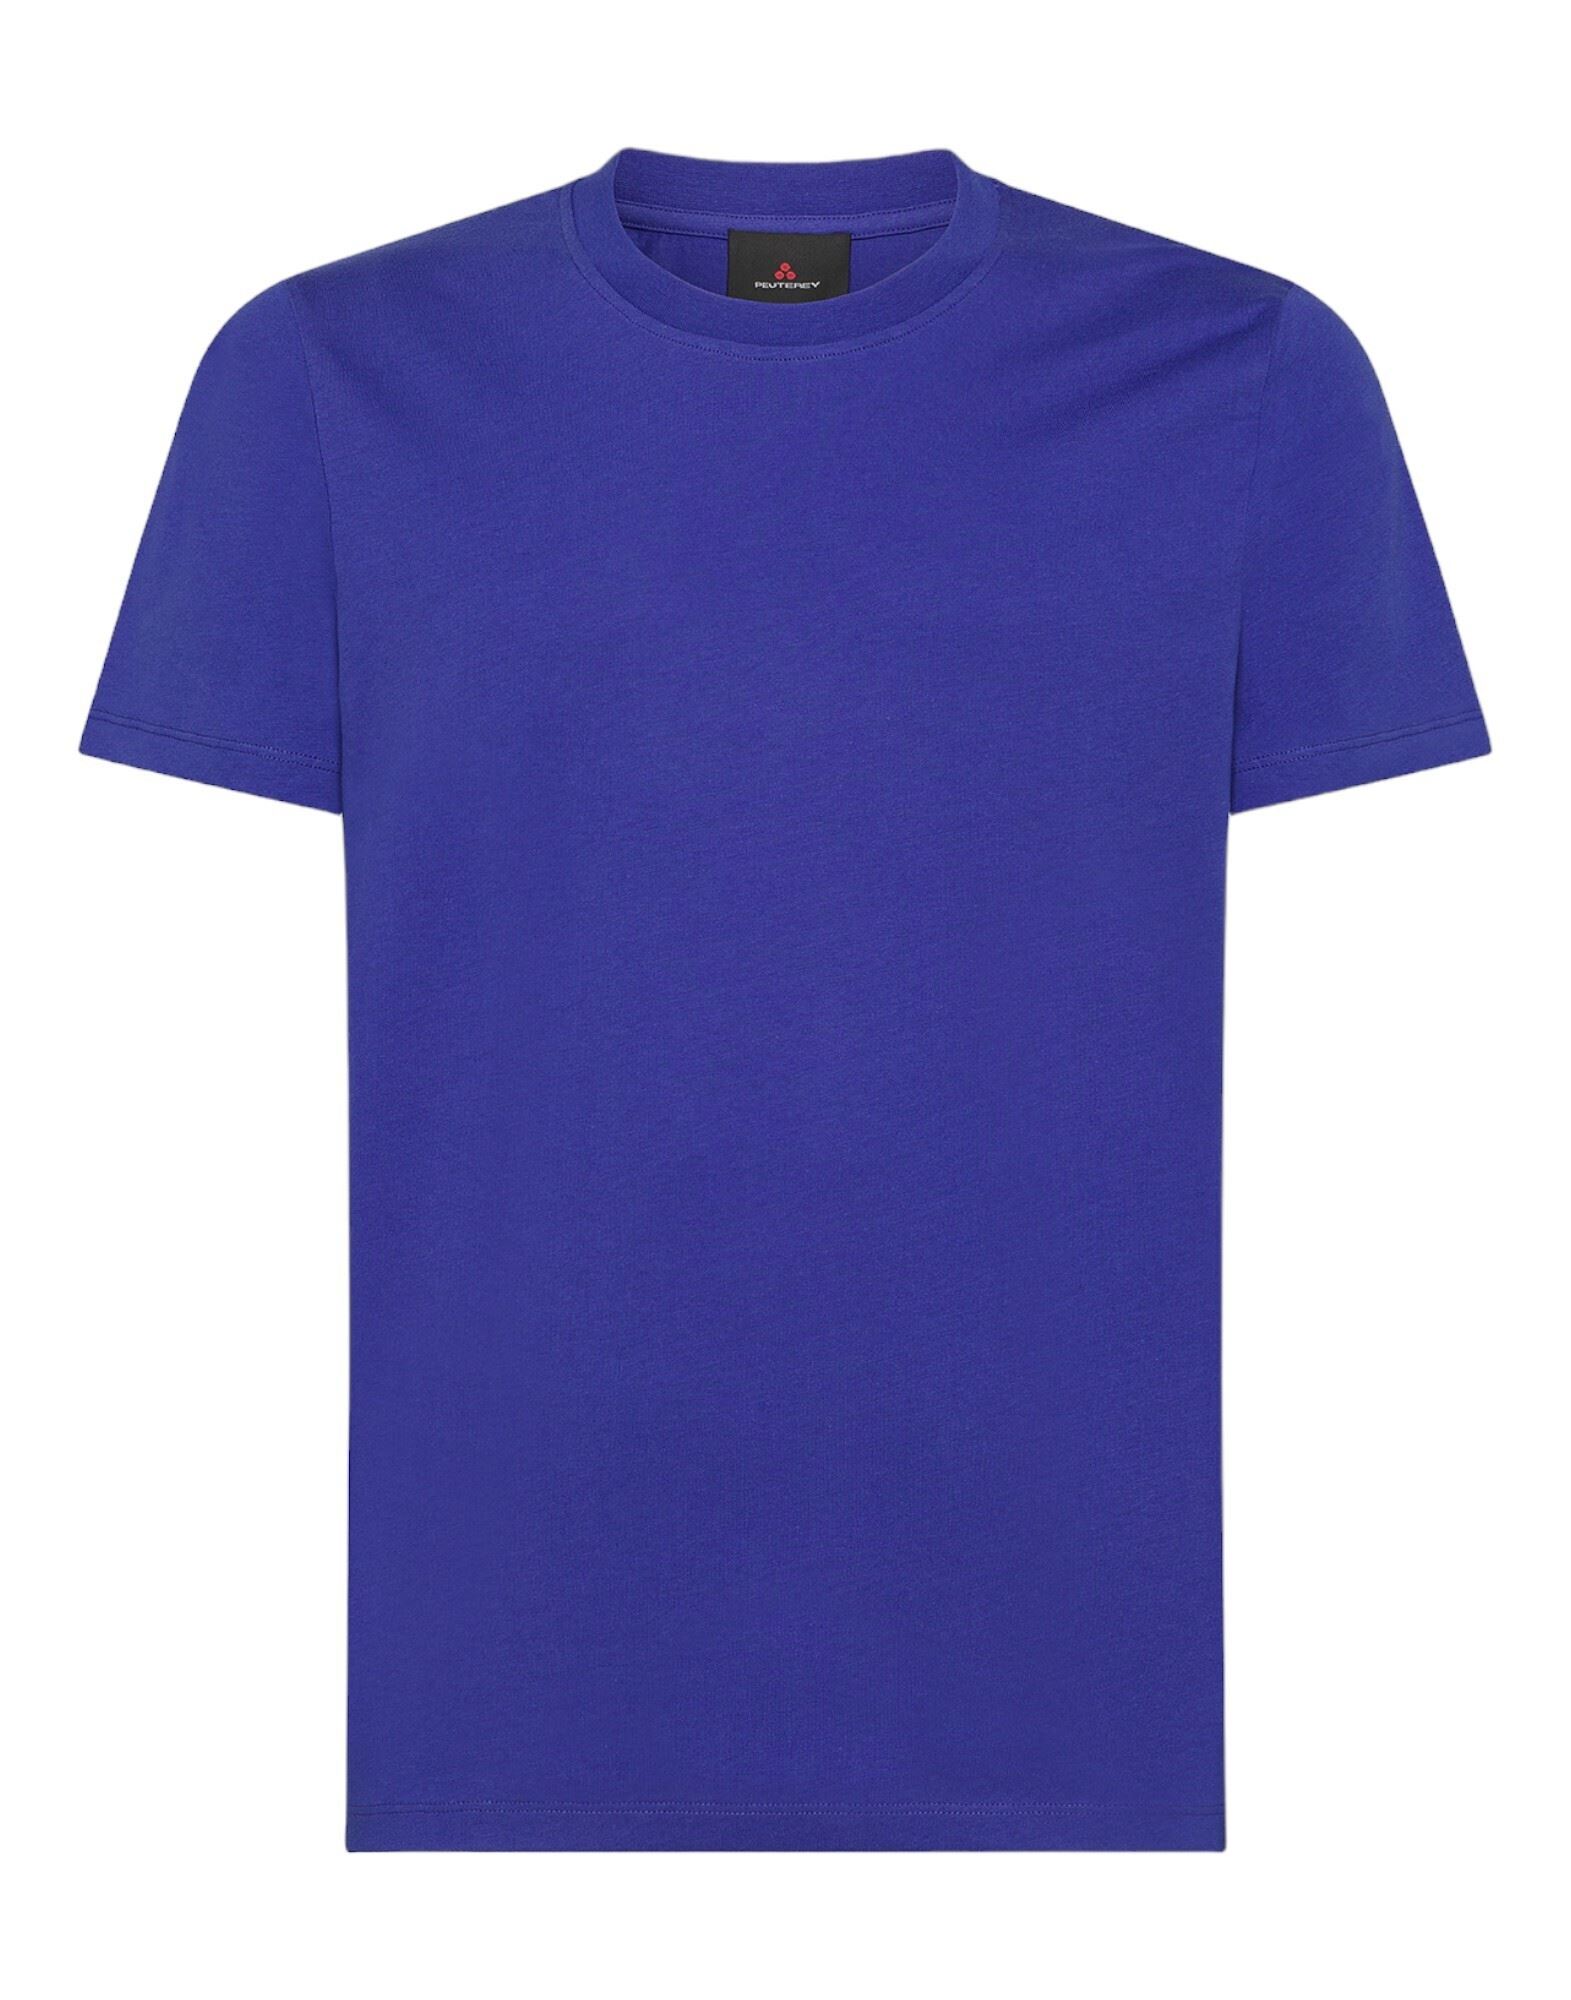 PEUTEREY T-shirts Herren Blau von PEUTEREY